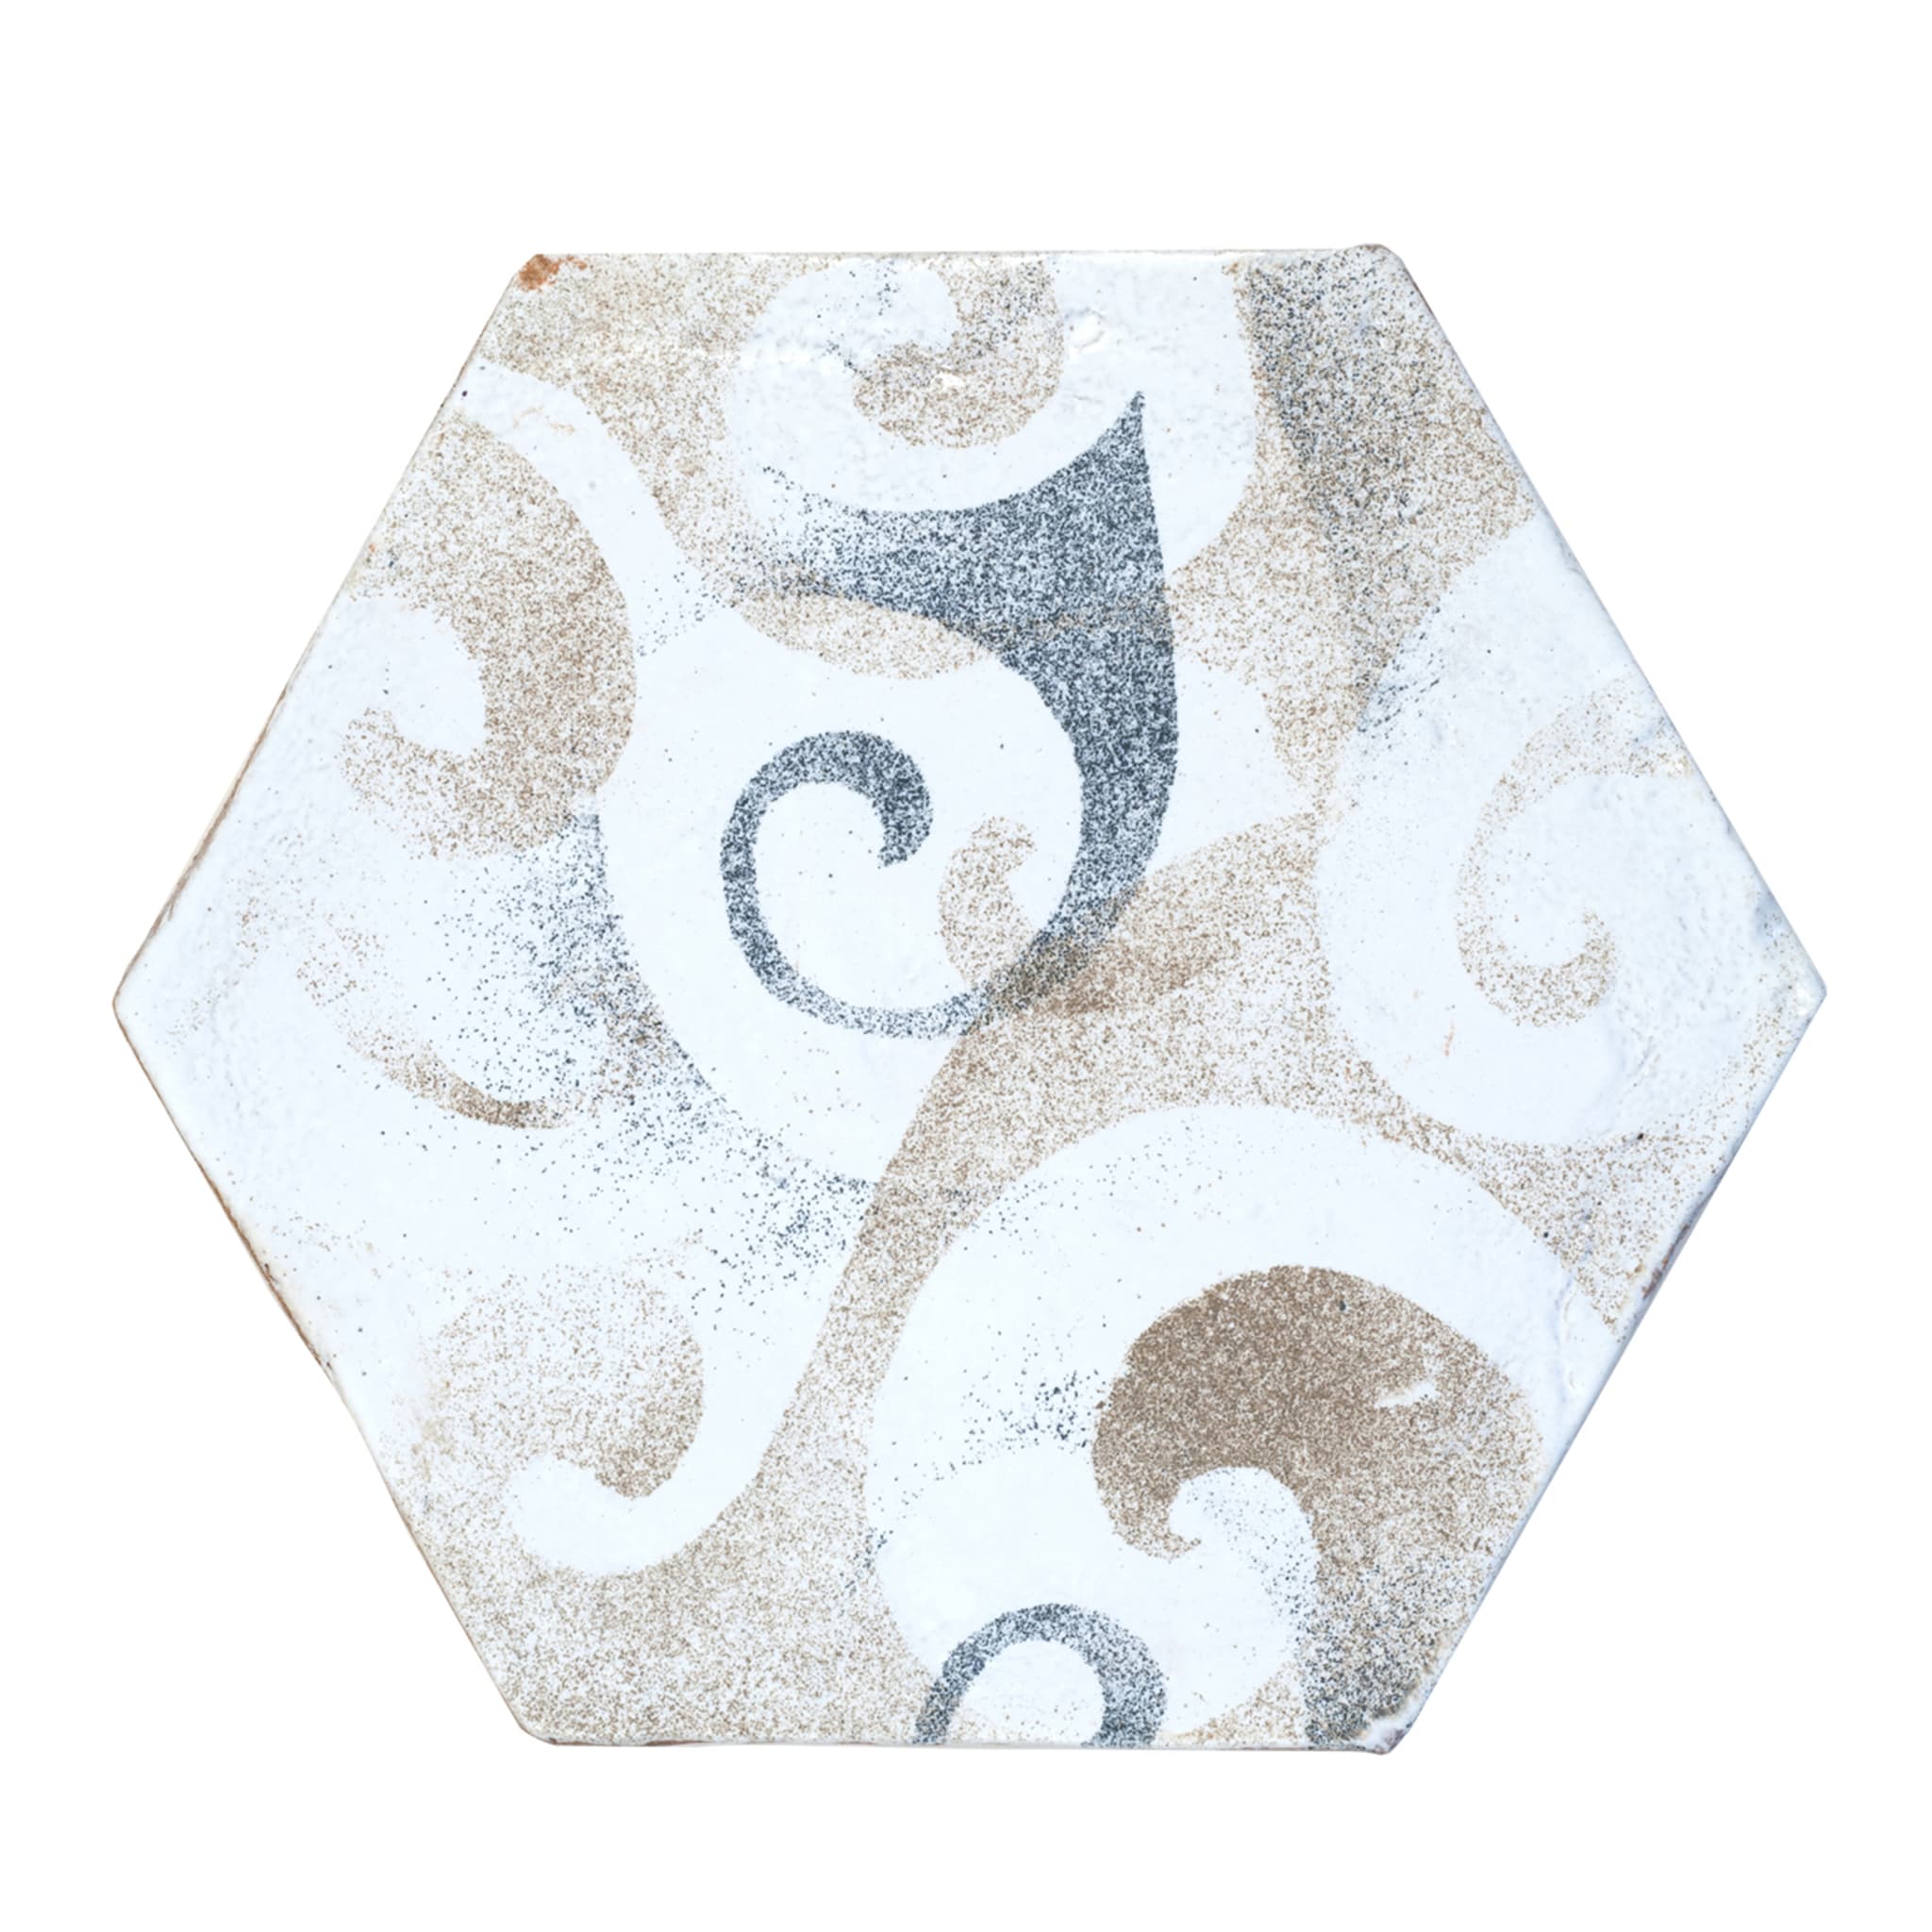 Barocco Set of 25 Sand & Smoke Hexagonal Tiles - Main view